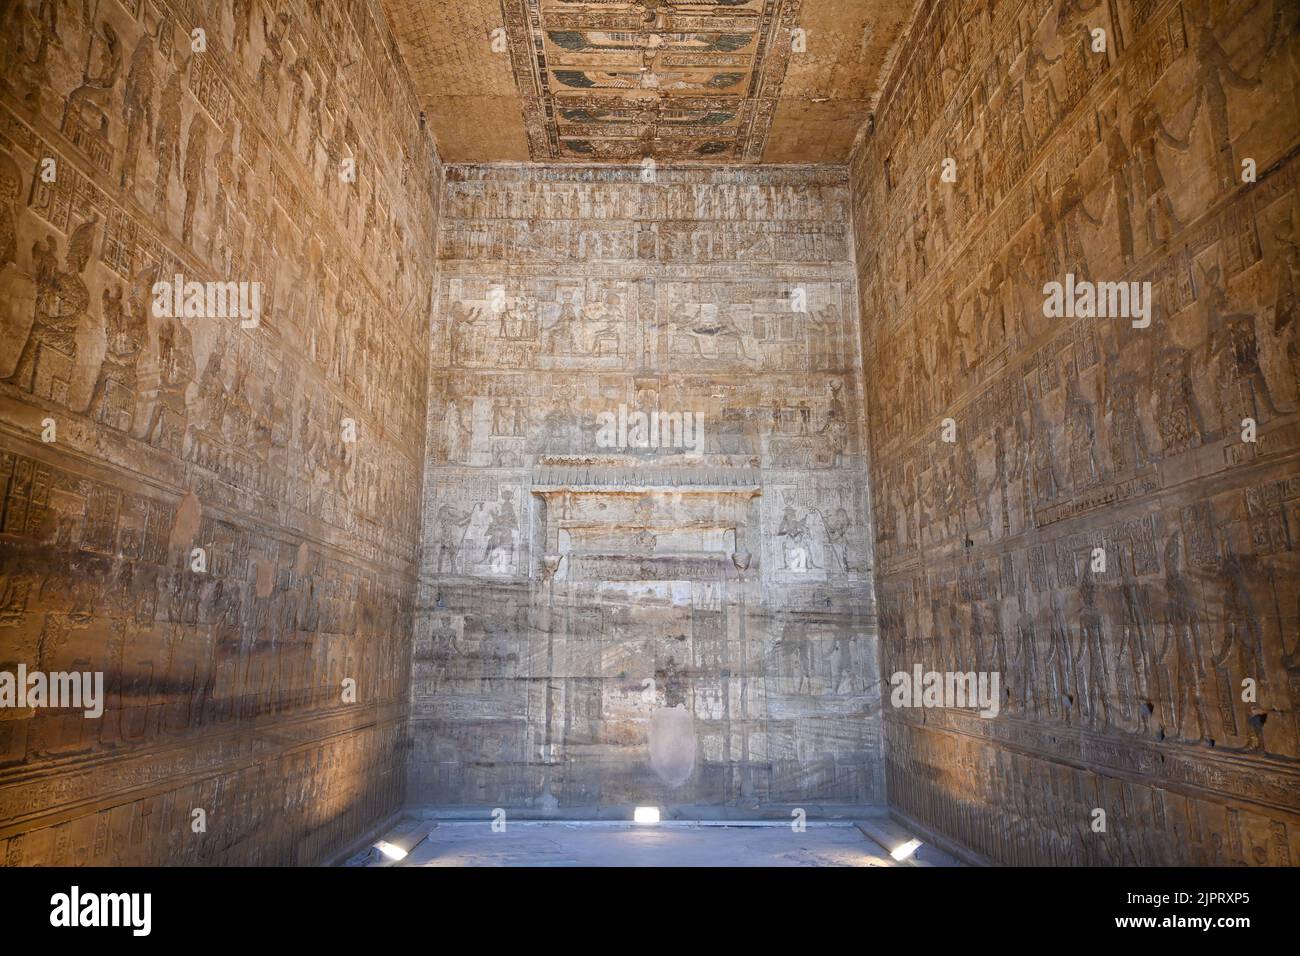 Innenraum, Geburtstempel Mamisi der Göttin Hathor, Hathor-Tempel, Dendera, Qina, Ägypten Stock Photo